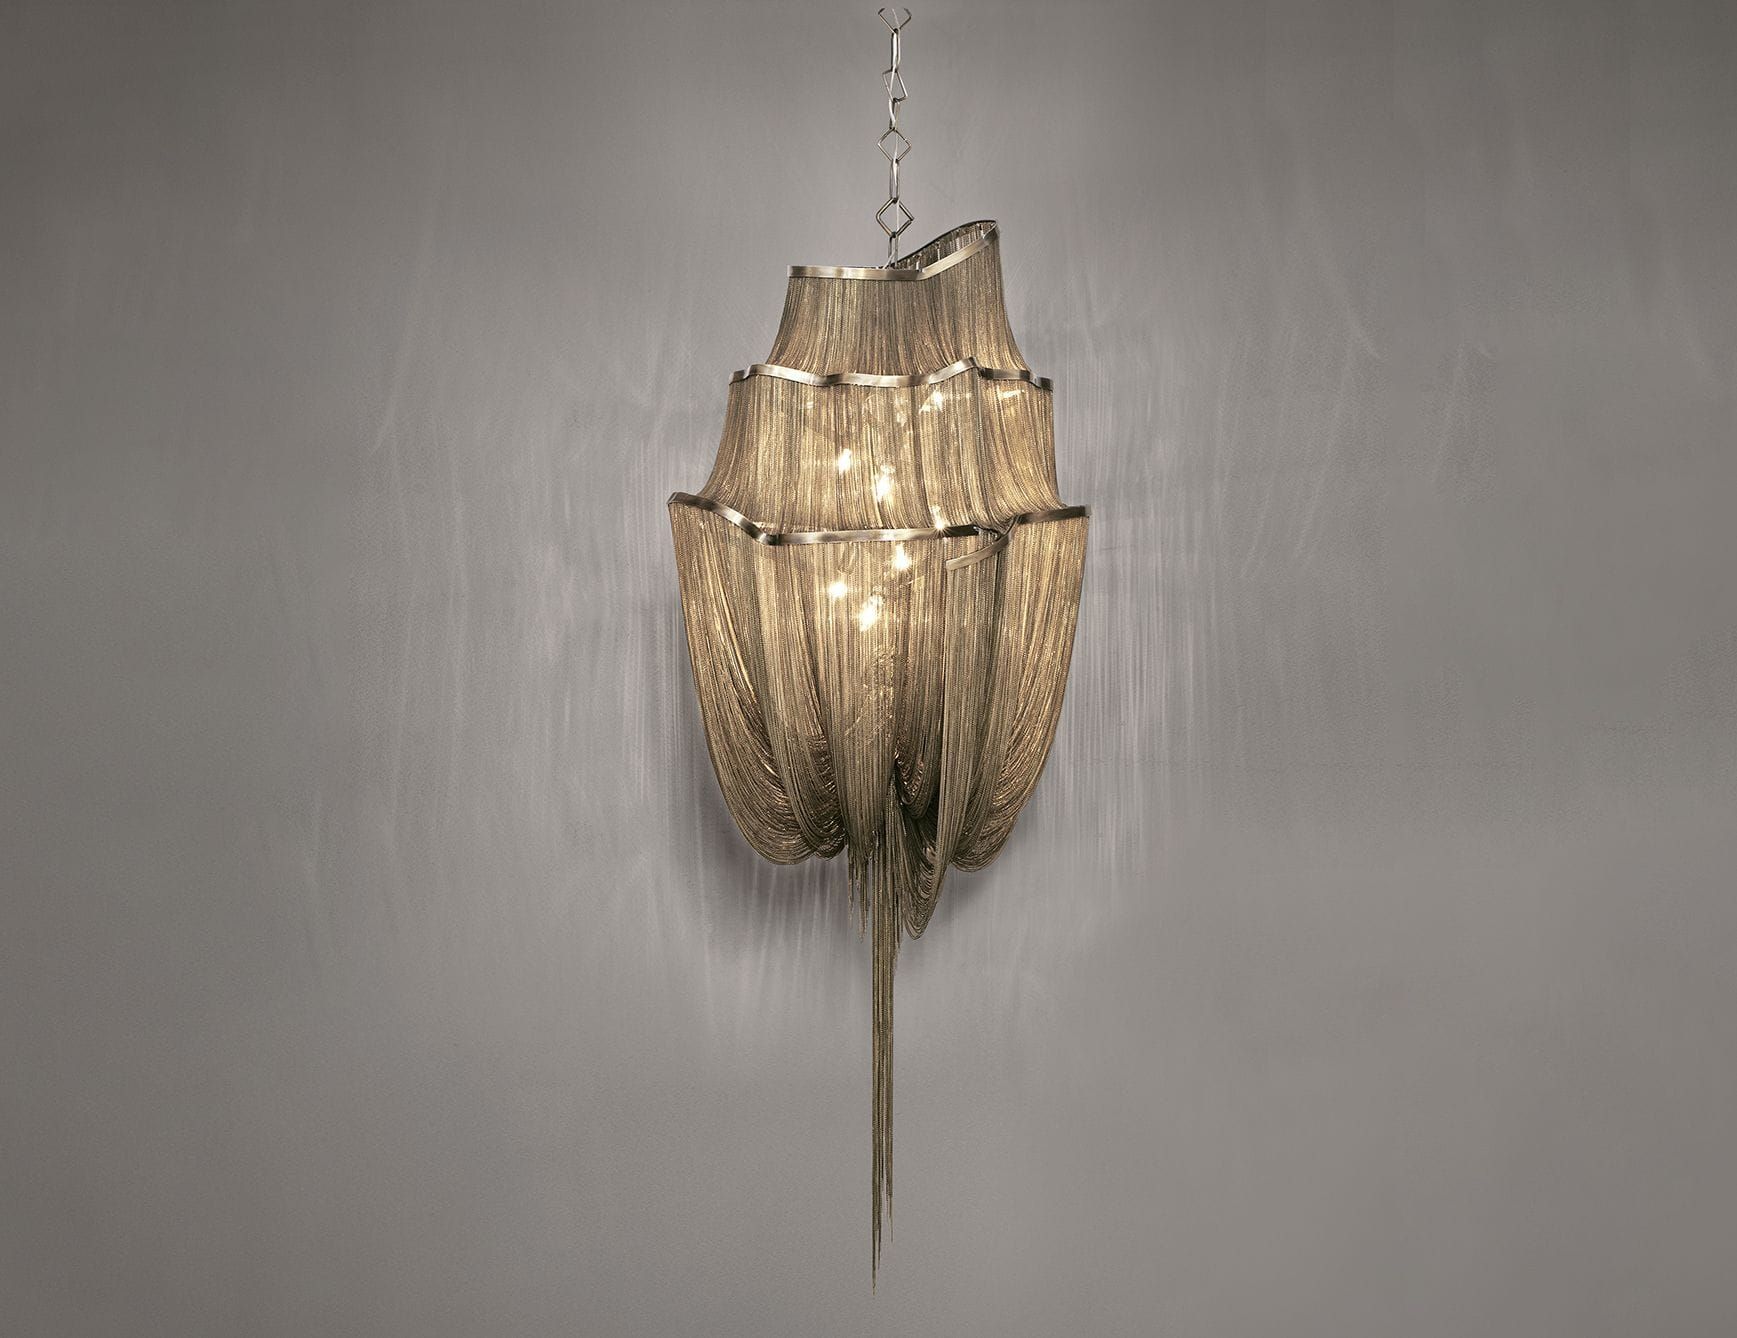 Atlantis contemporary Italian chandelier with nickel metal